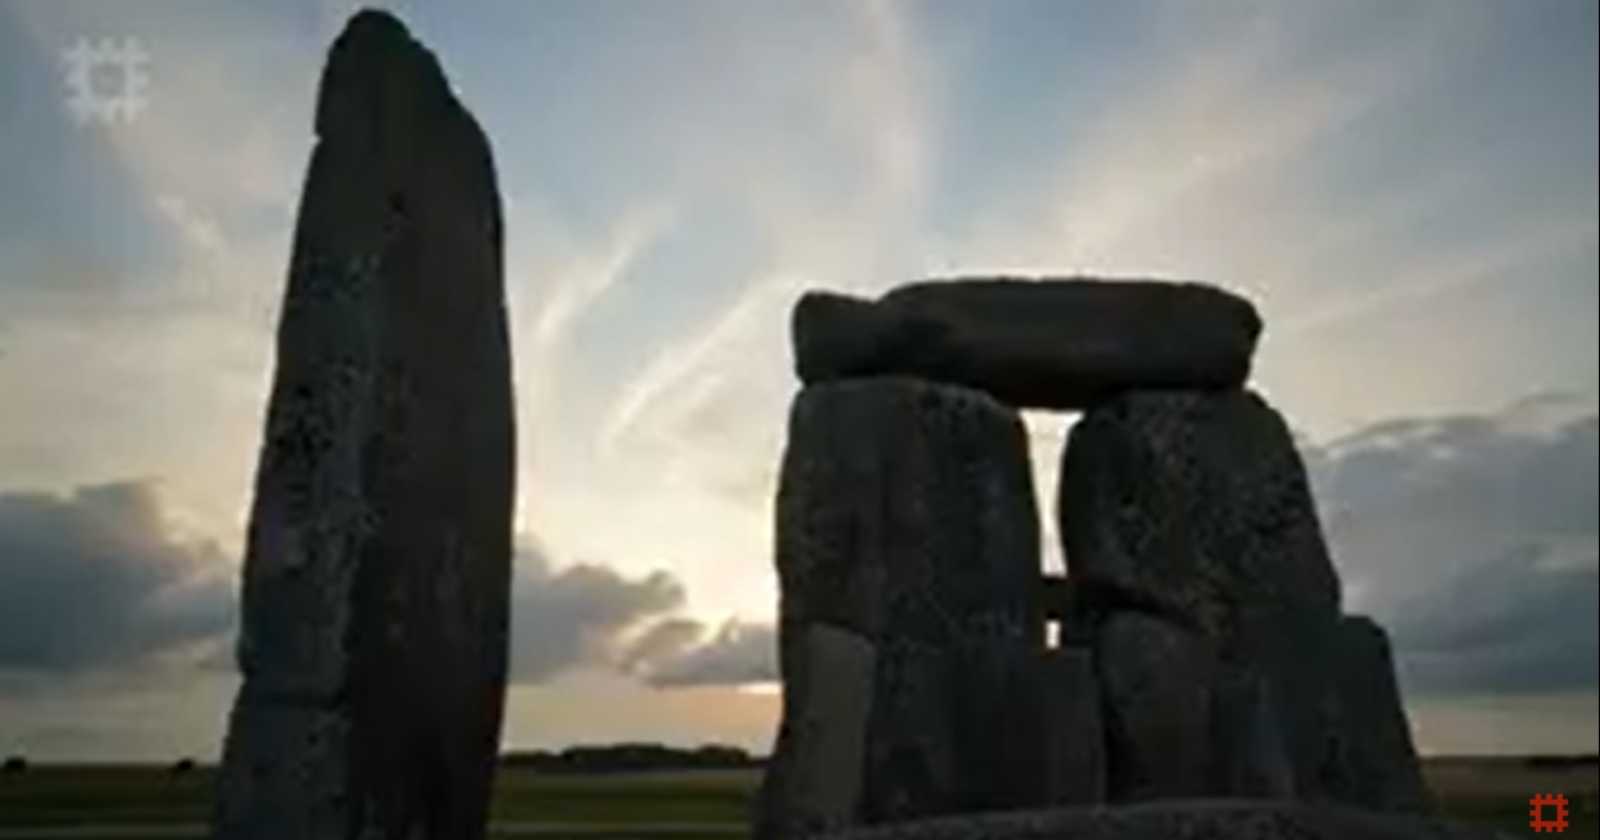 solsticio de verano Stonehenge